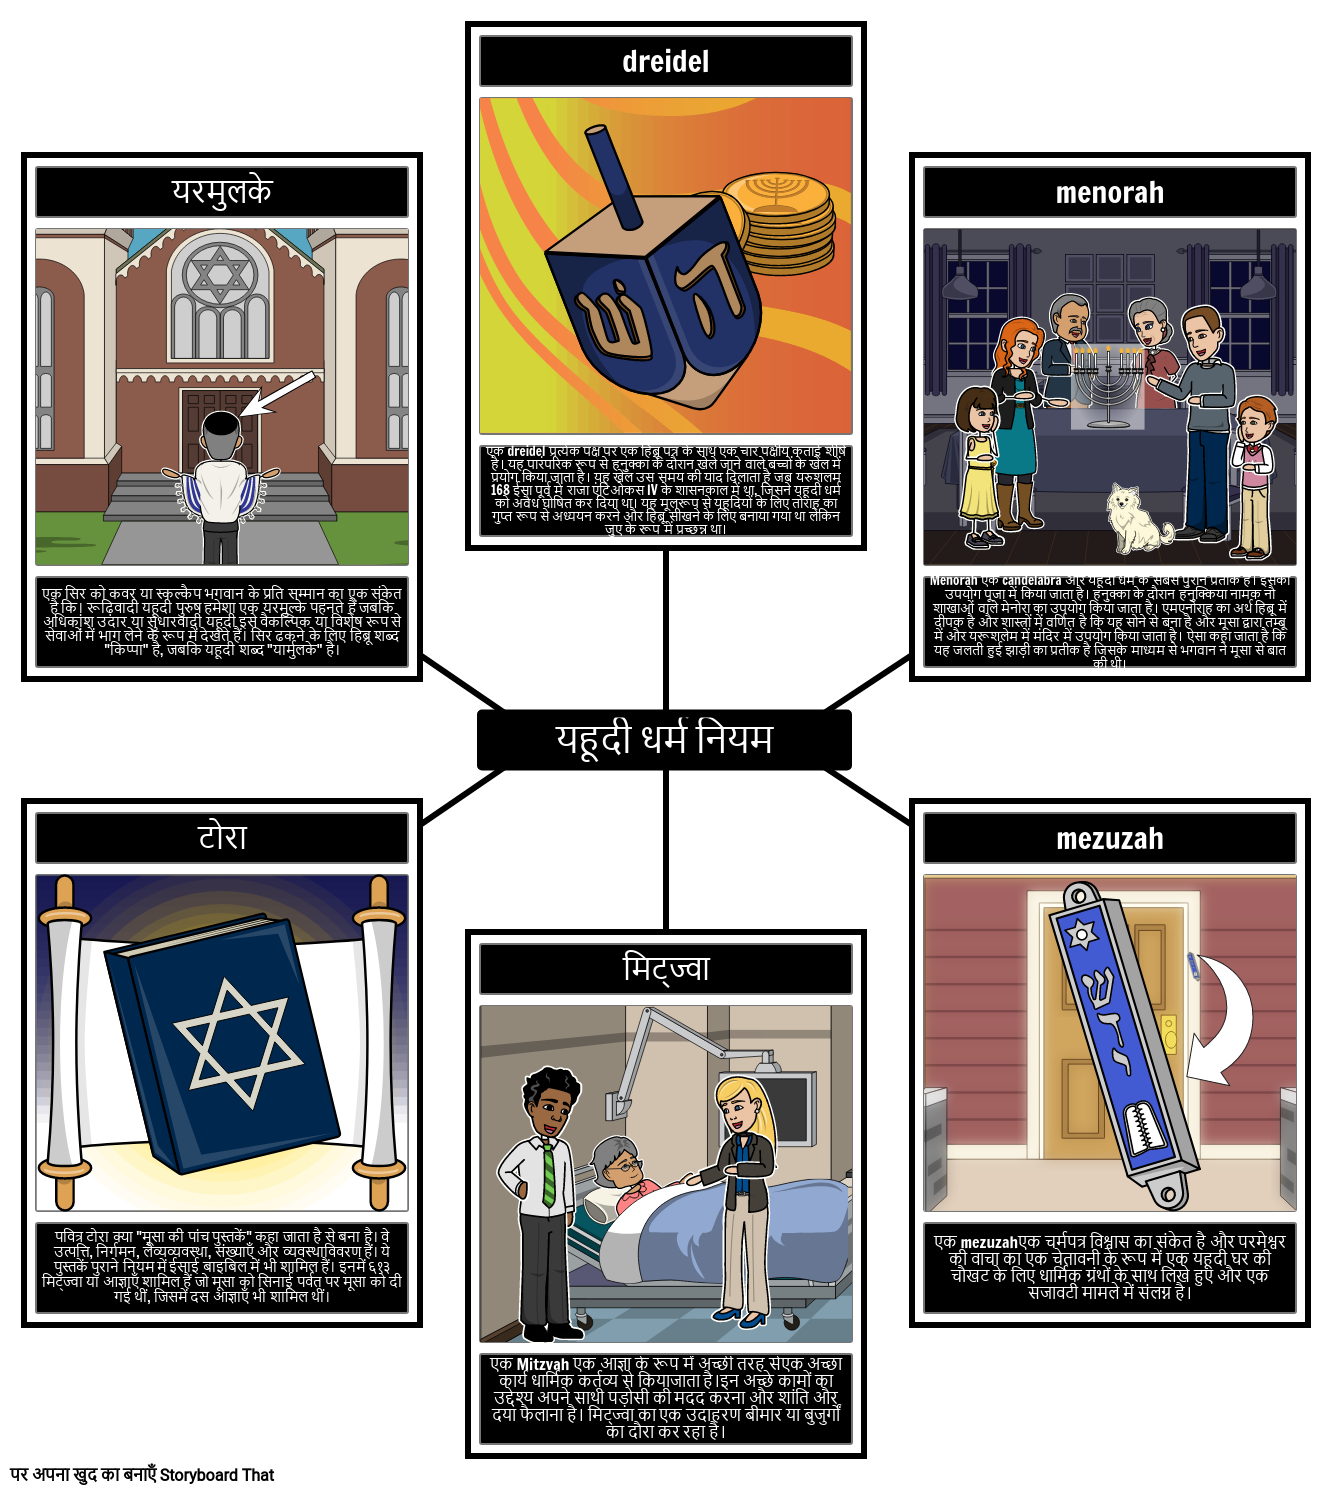 यहूदी धर्म शर्तें